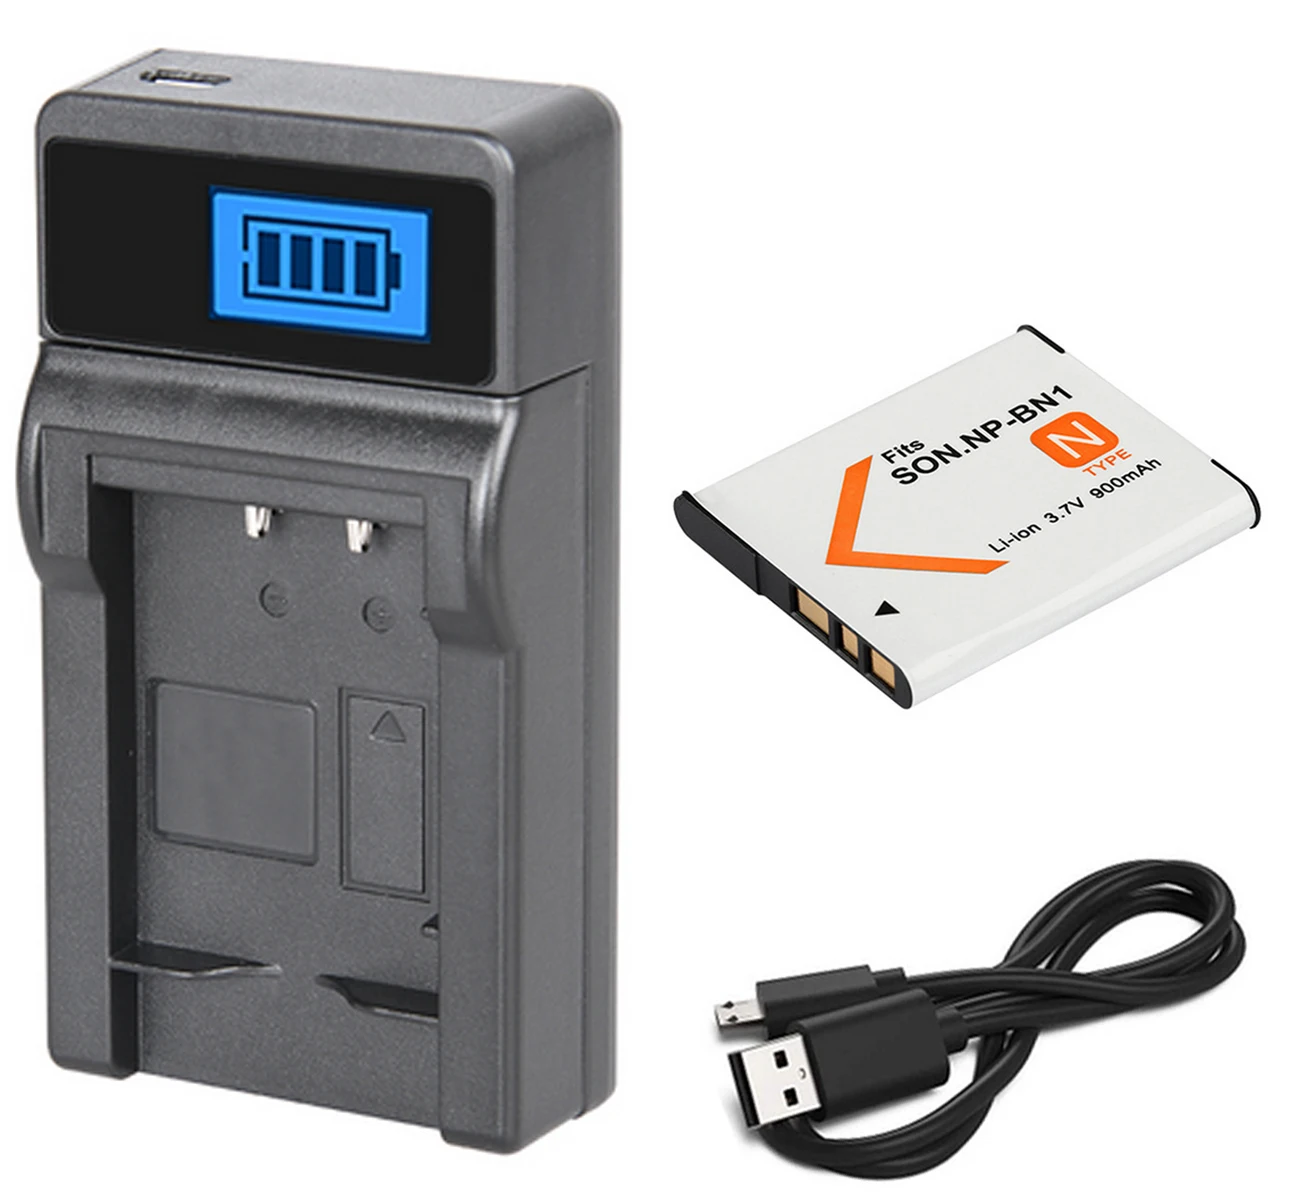 USB Charger 2 pcs Battery for SONY NP-BN1 DSC-W350 DCS-W330 DSC-W320 DSC-W310 